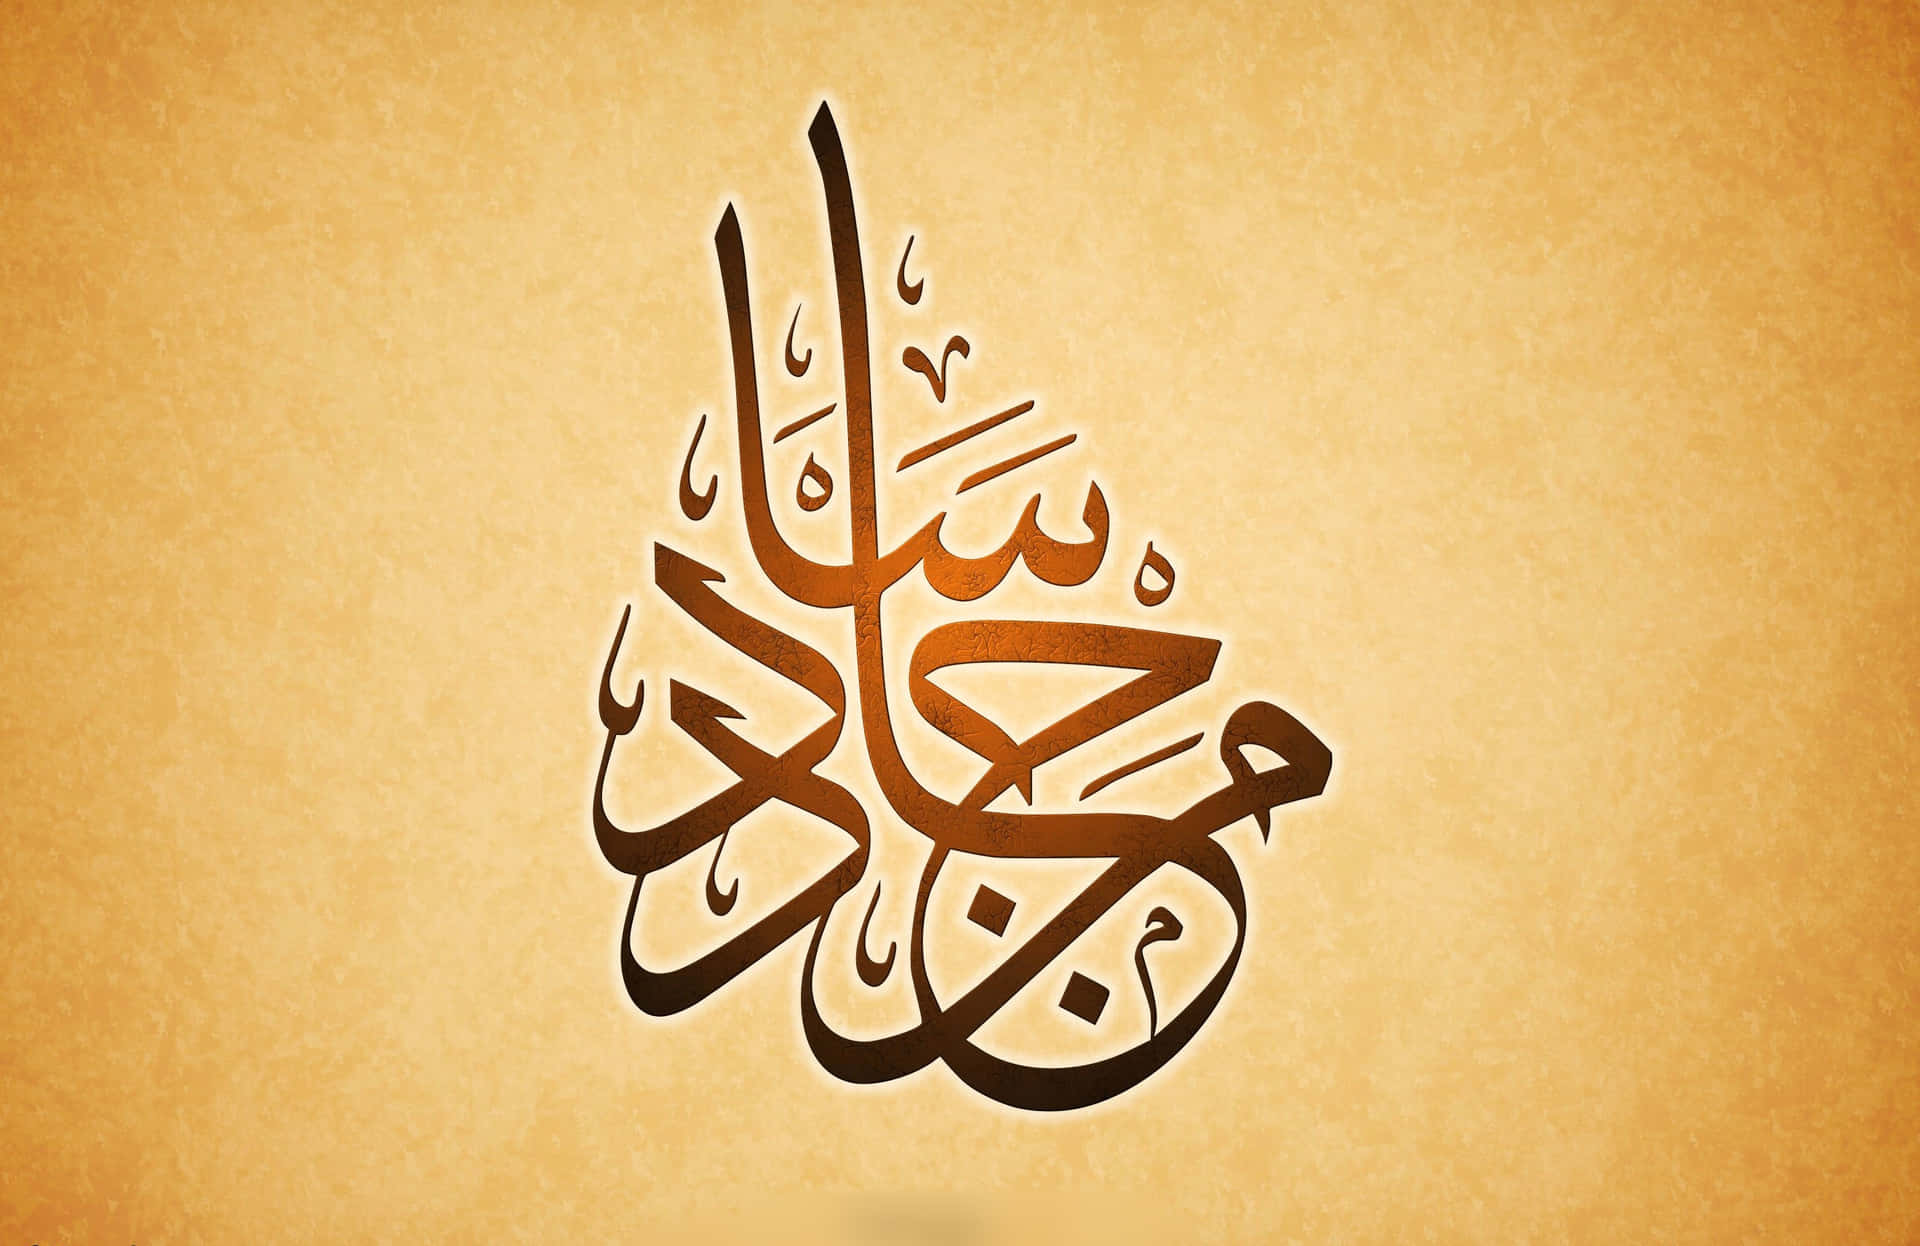 Aescrita Árabe Utilizada Na Caligrafia Para Expressar Literatura.